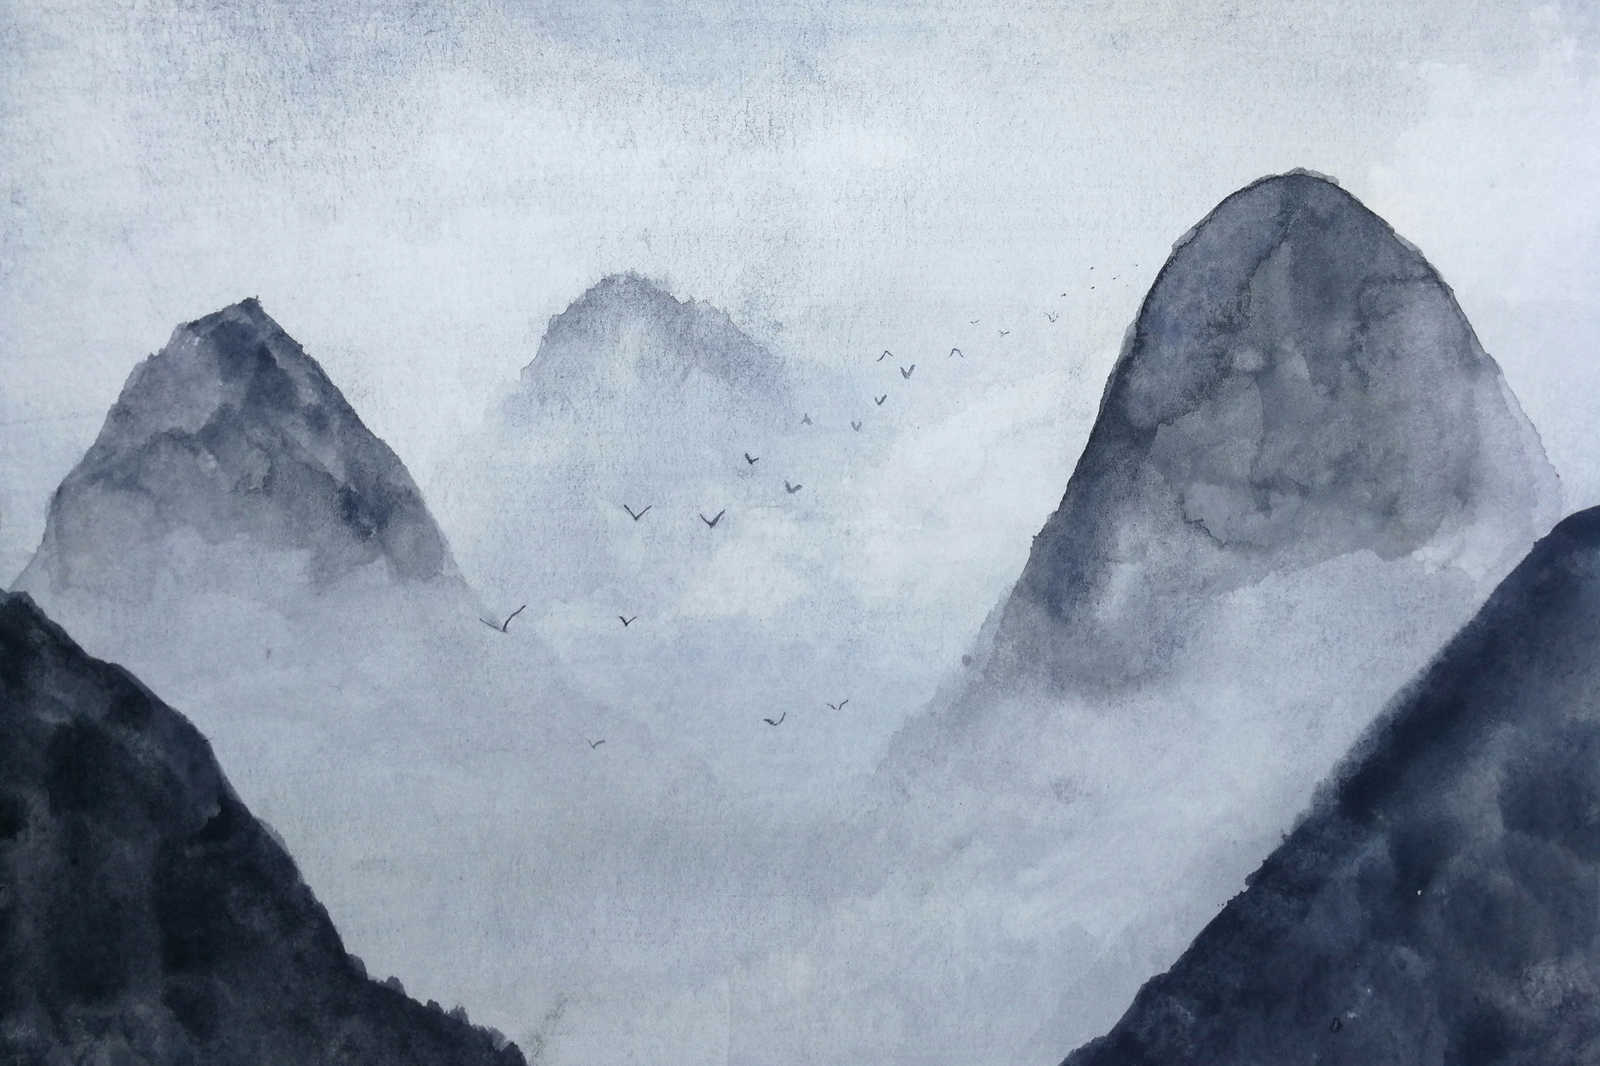             Canvas Mountain Landscape Watercolour - 0.90 m x 0.60 m
        